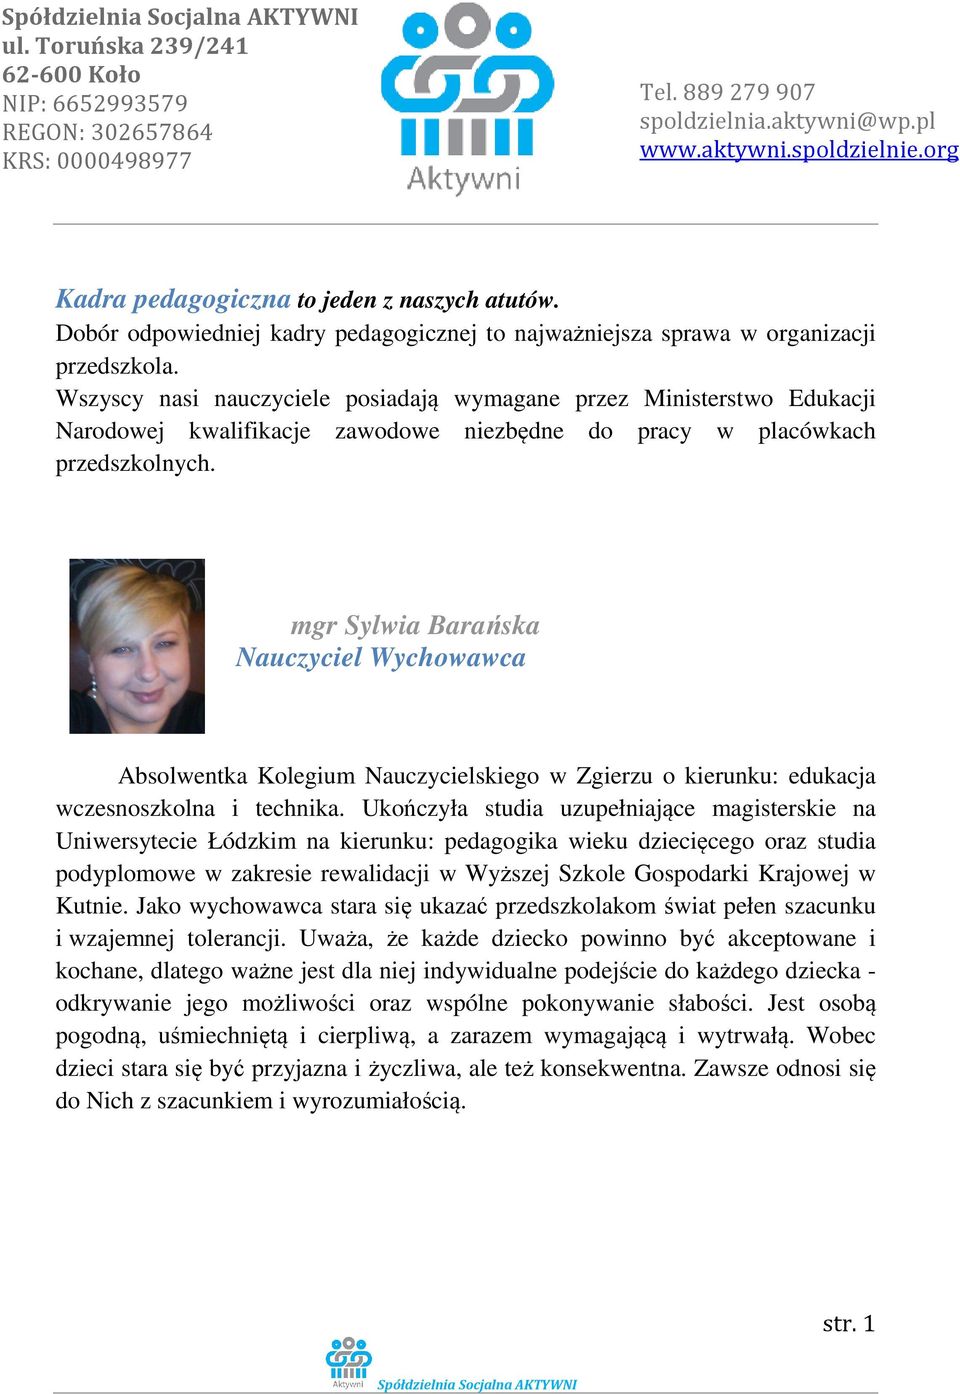 mgr Sylwia Barańska Nauczyciel Wychowawca Absolwentka Kolegium Nauczycielskiego w Zgierzu o kierunku: edukacja wczesnoszkolna i technika.